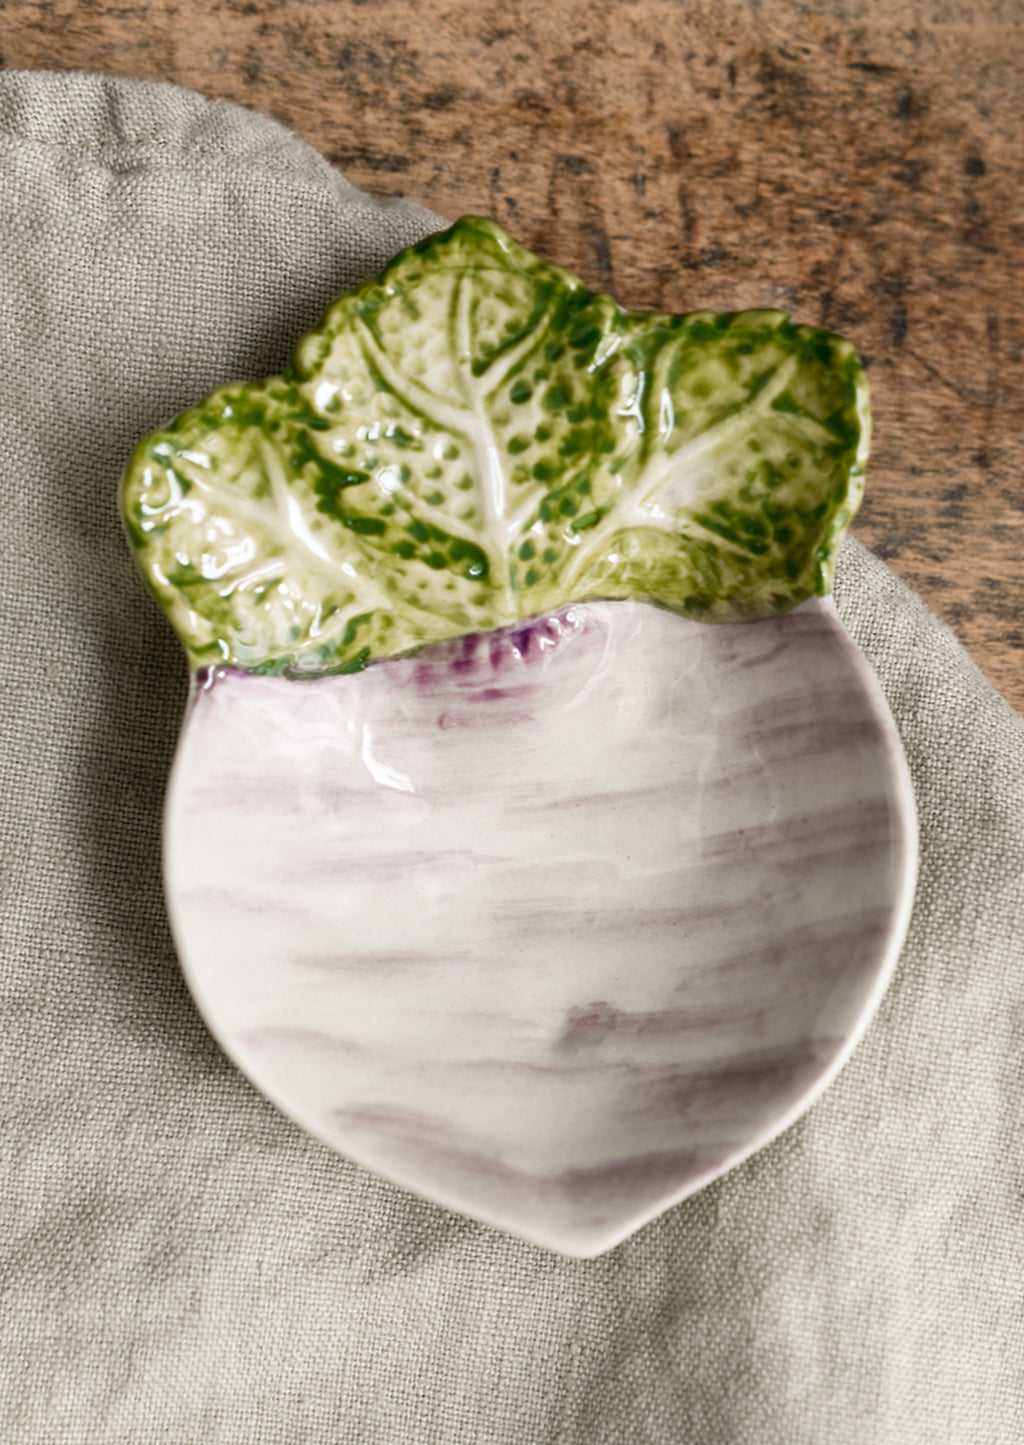 Turnip: A ceramic veggie dish in the shape of a turnip.